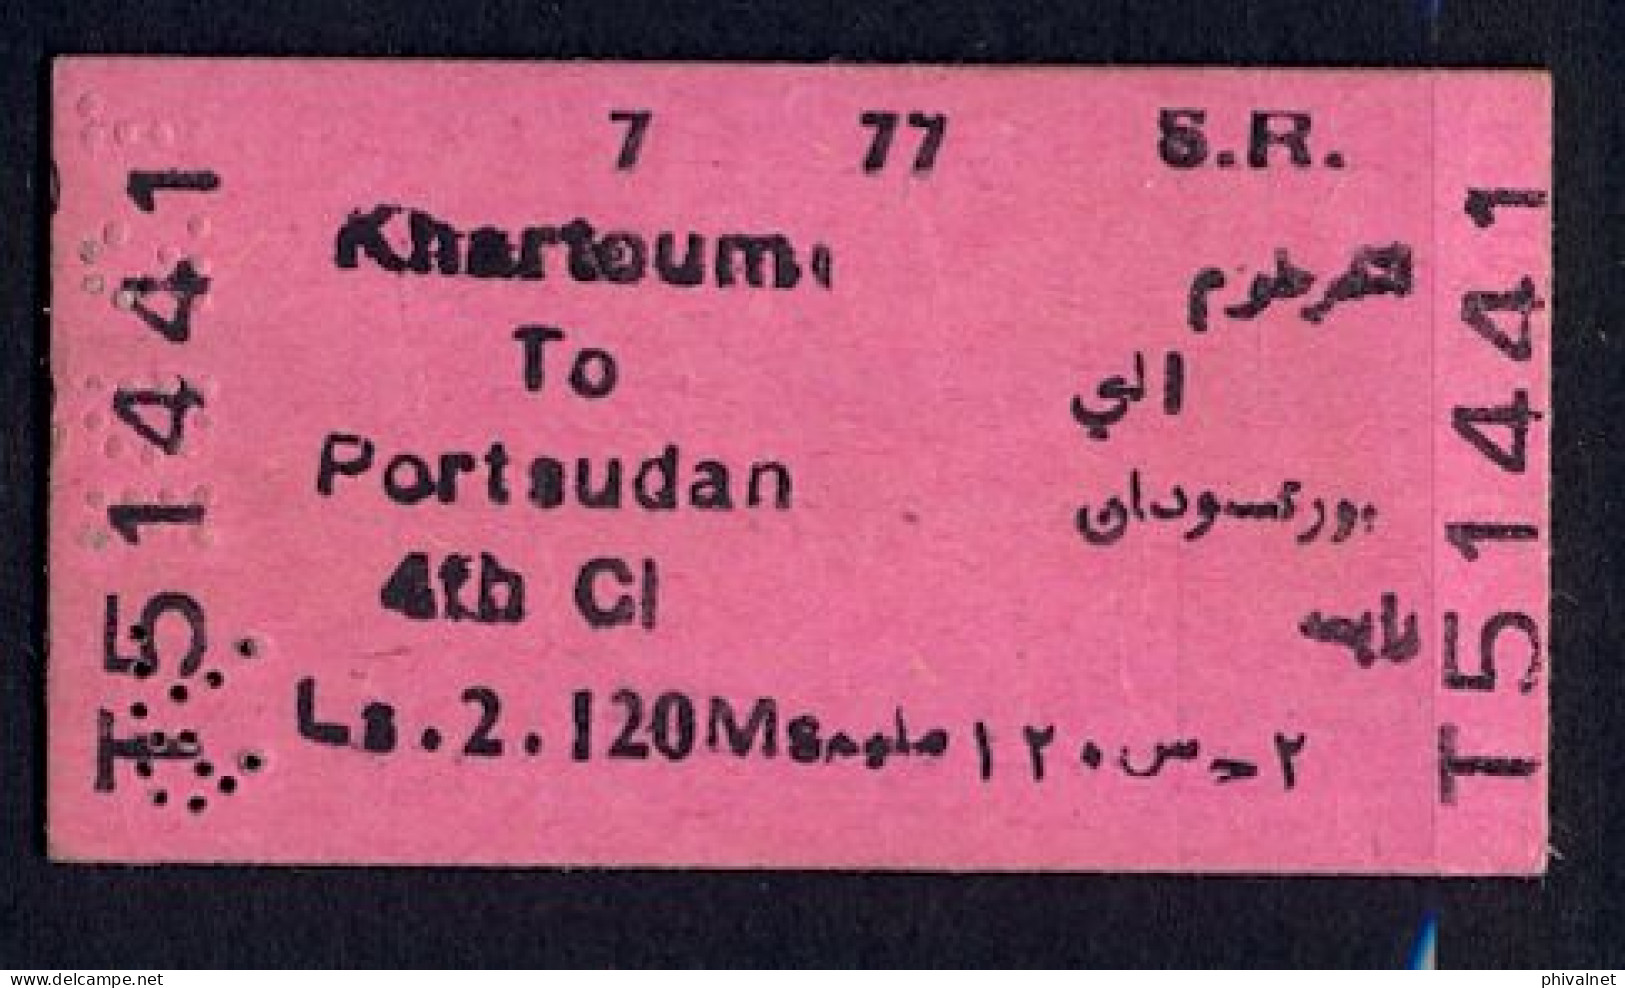 SOUDAN / SUDAN , KHARTOUM - PORT SUDAN , TICKET DE FERROCARRIL , TREN , TRAIN , RAILWAYS - Mundo